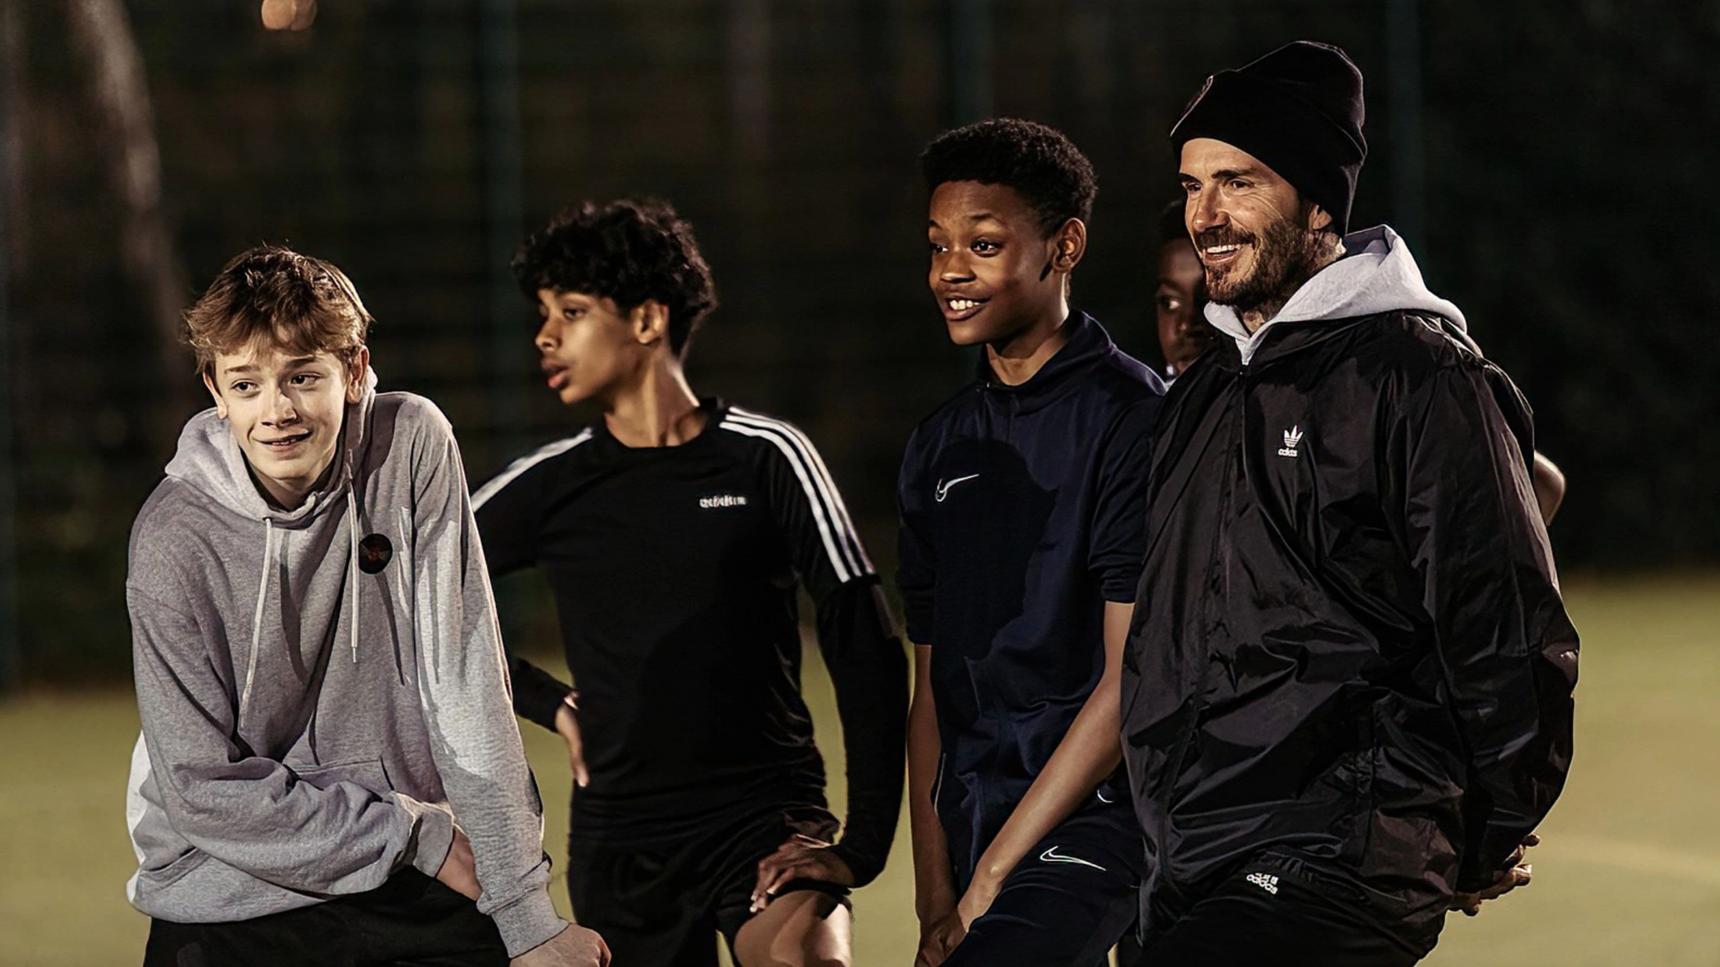 Fondo de pantalla de Beckham: Salva a nuestro equipo online